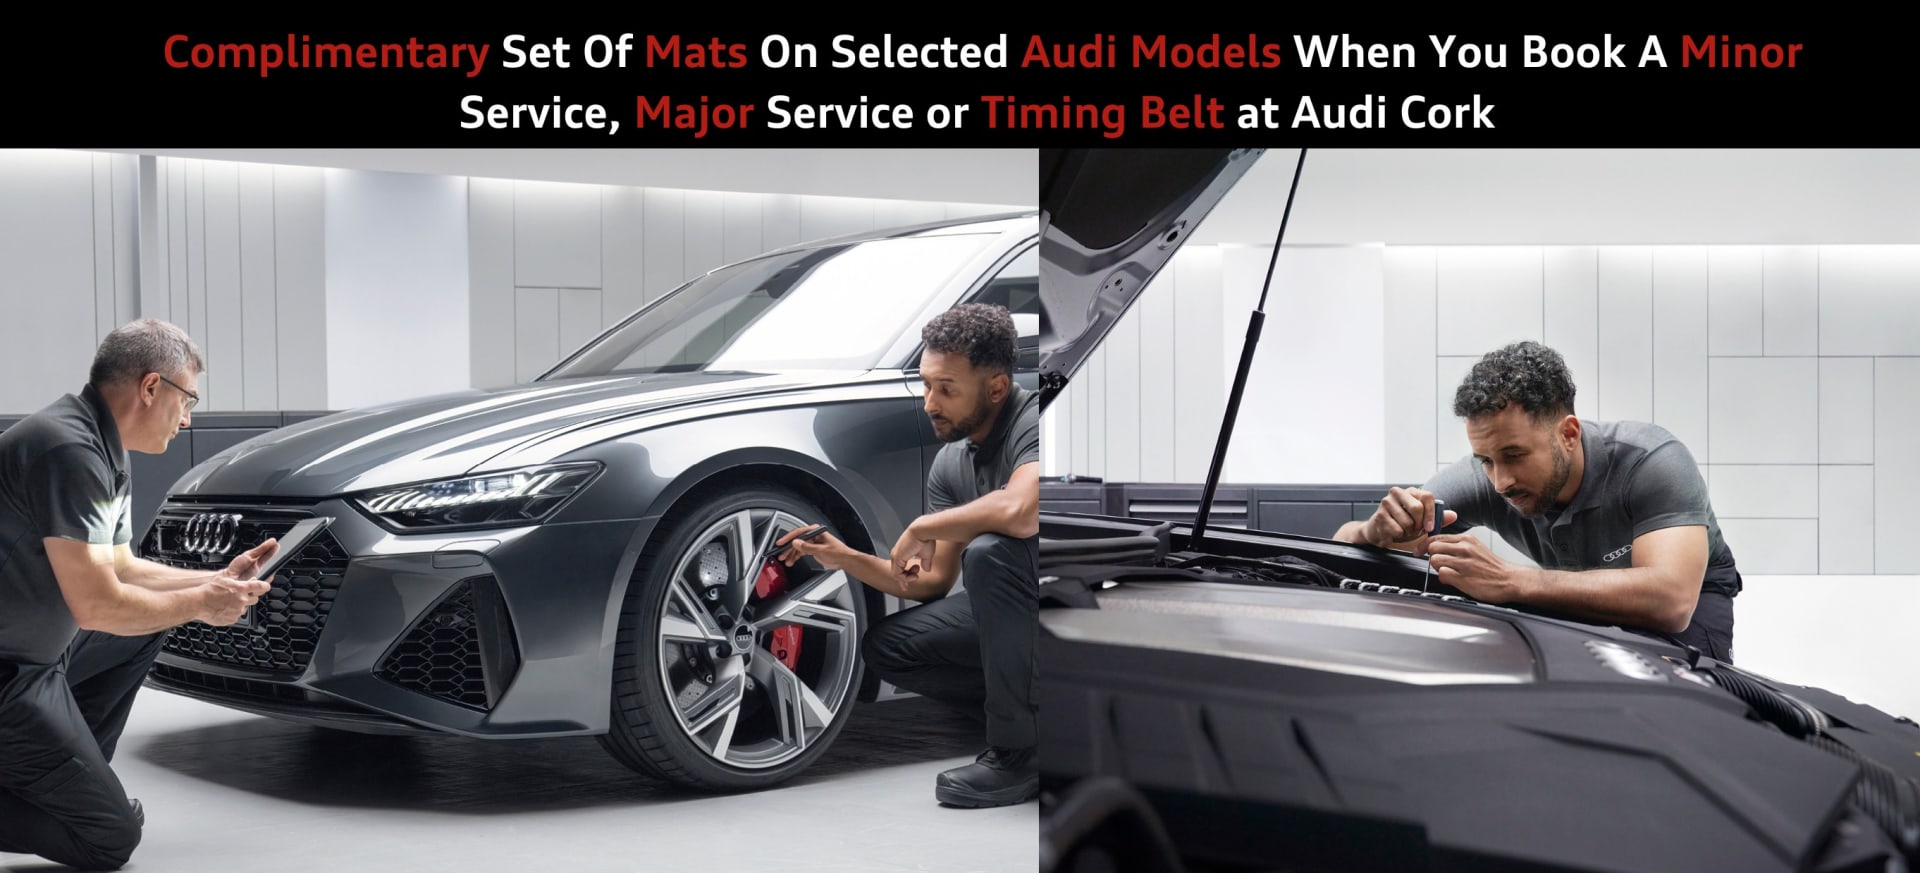 Audi Cork Service Offer Complimentary Mats